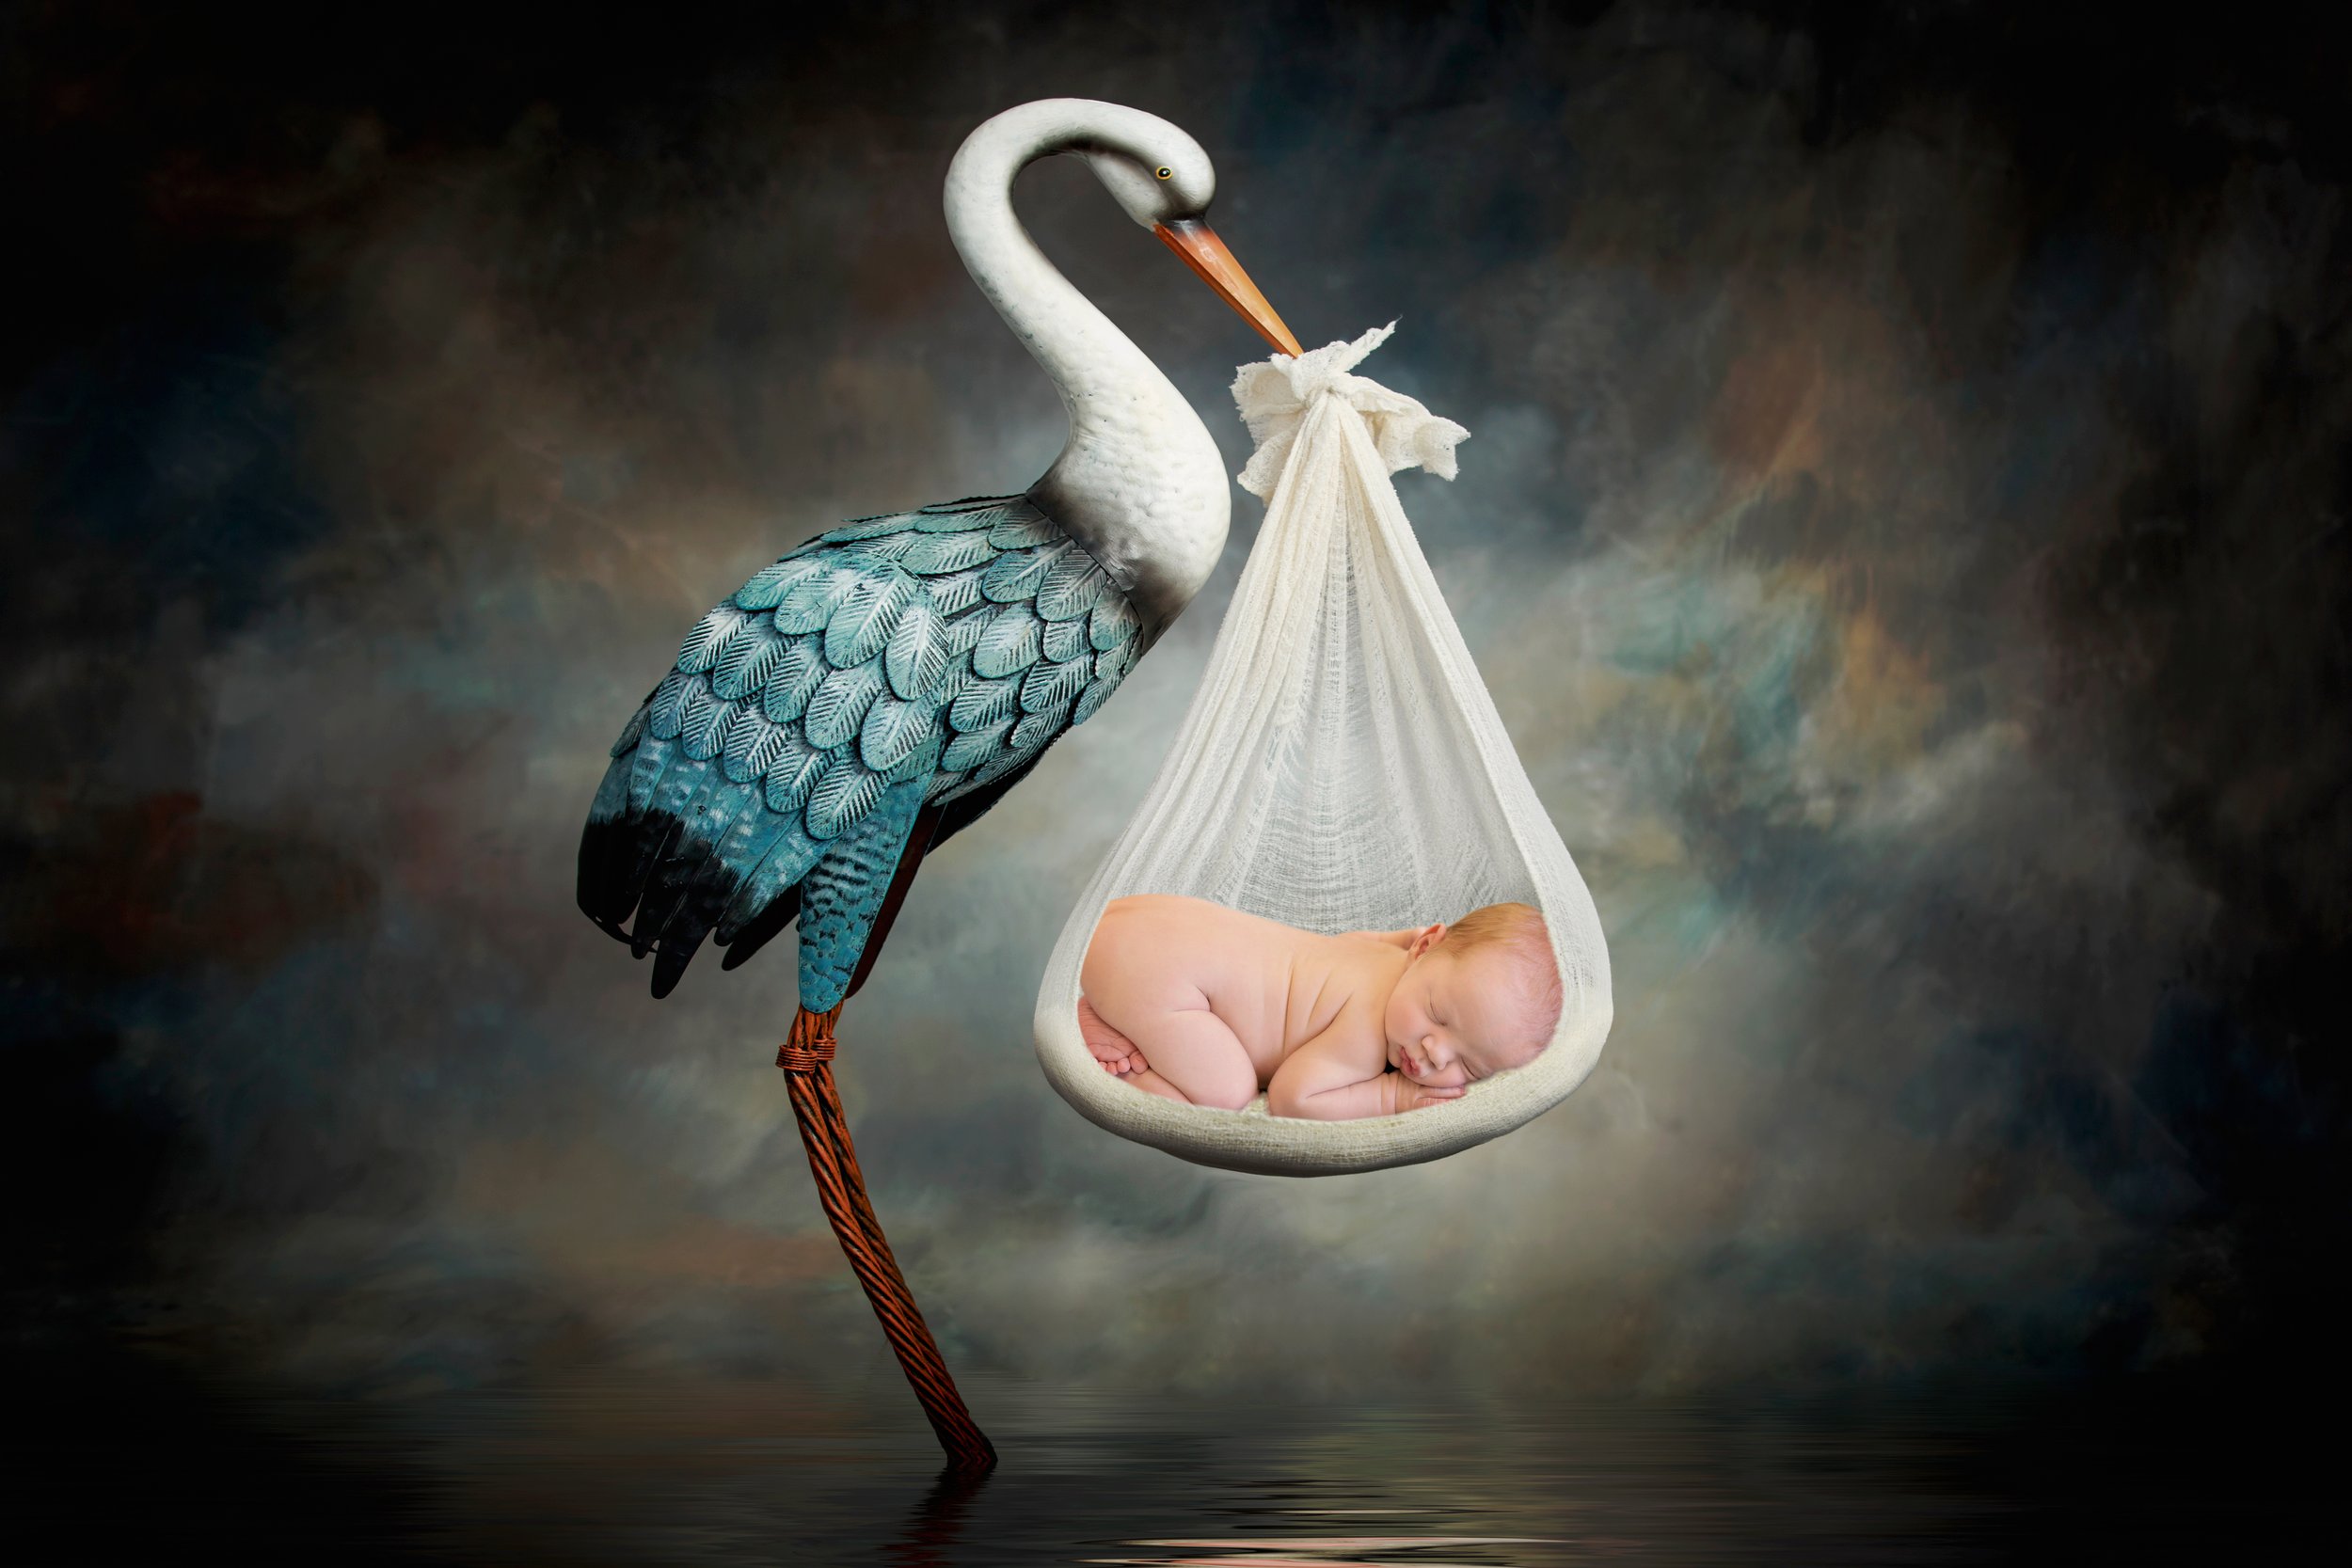 stork bringing a baby boy